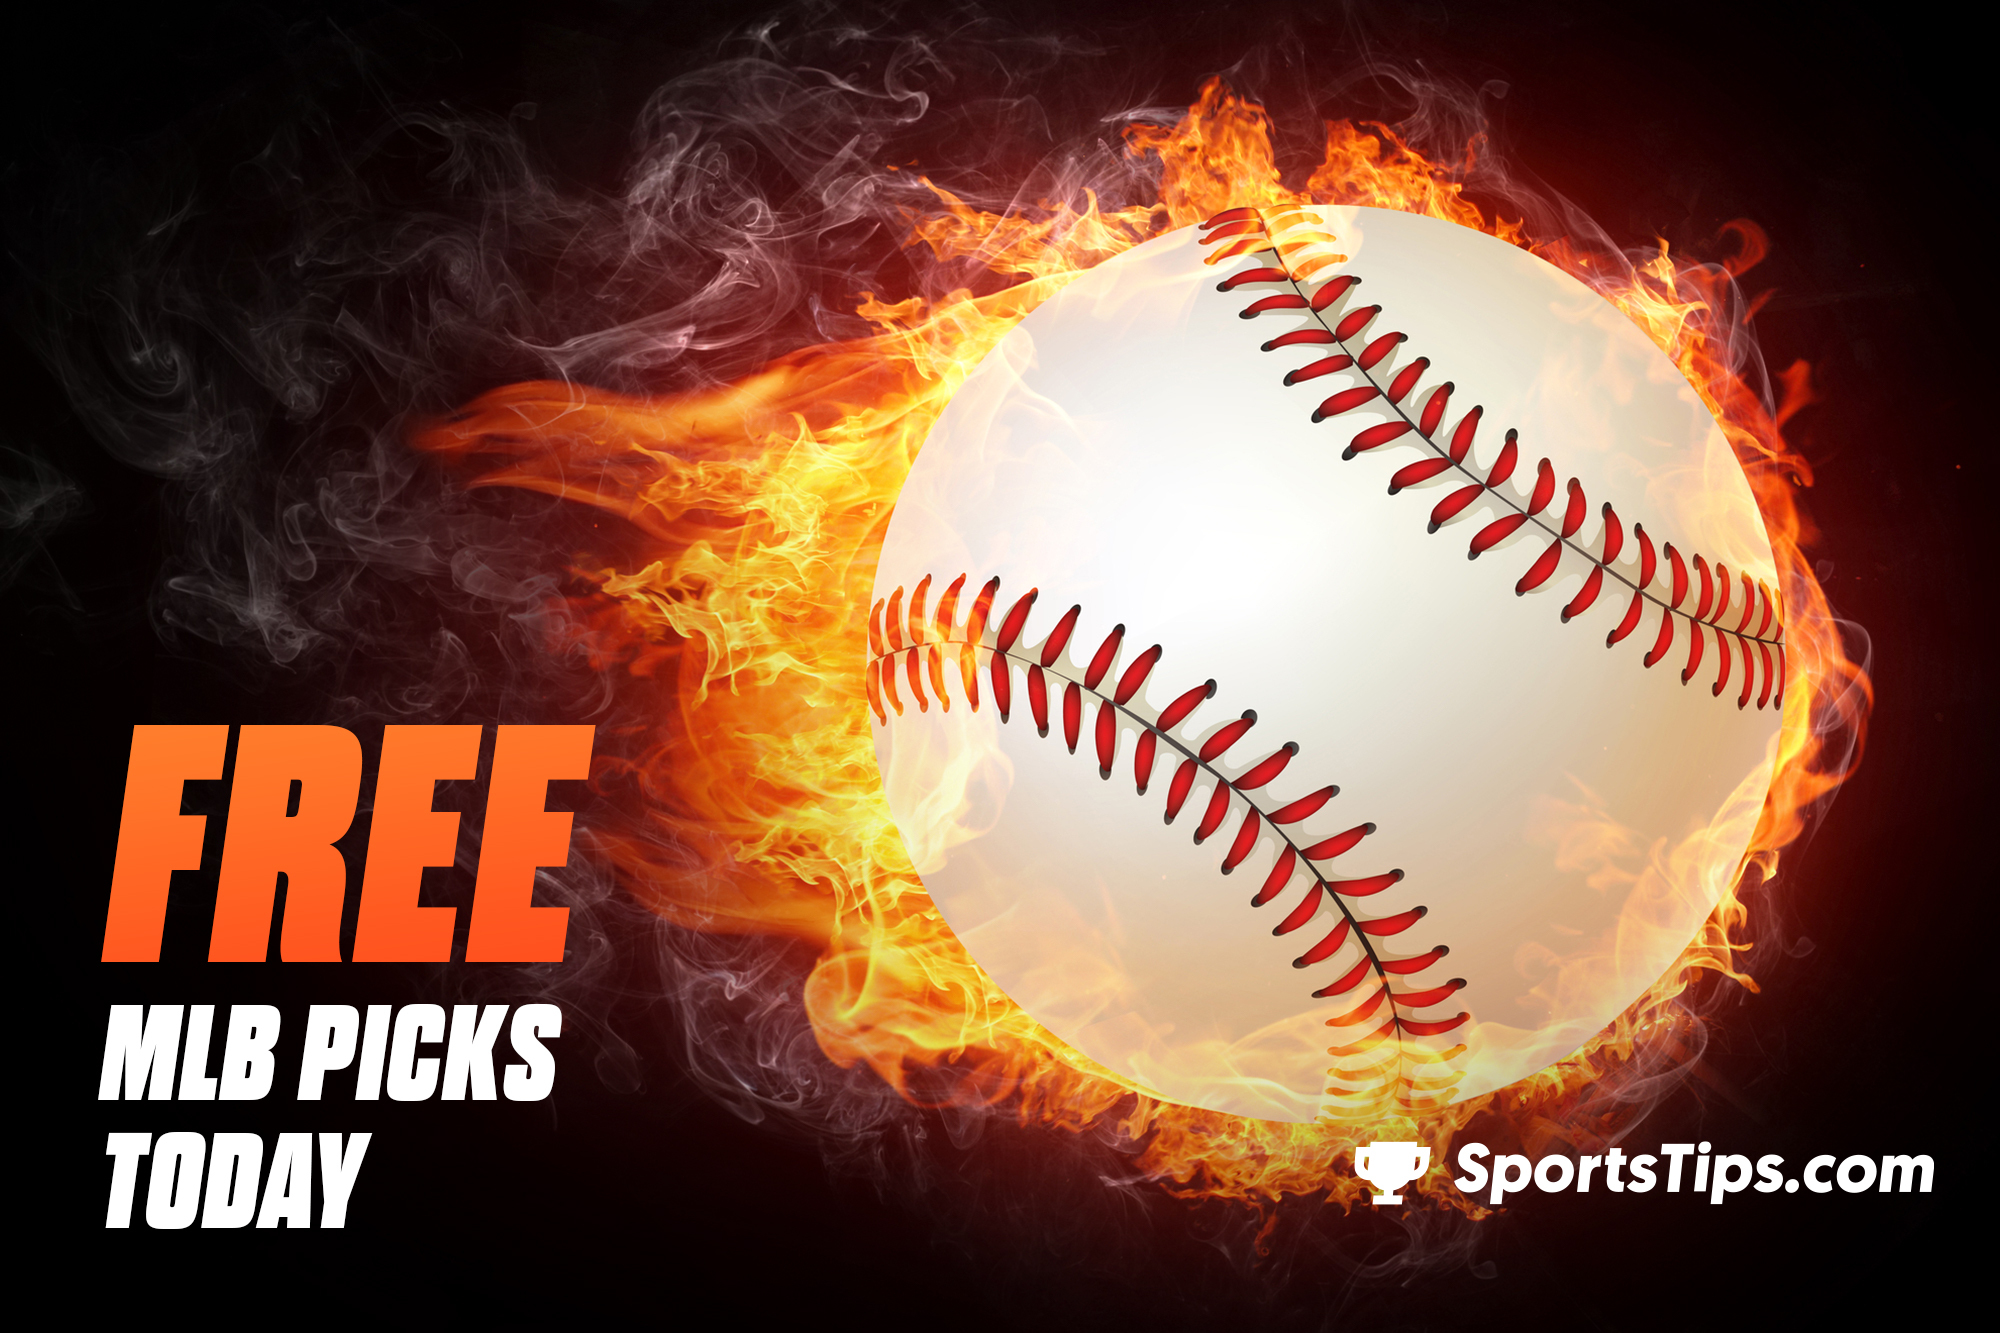 Free MLB Picks Today for Thursday, April 14th, 2022